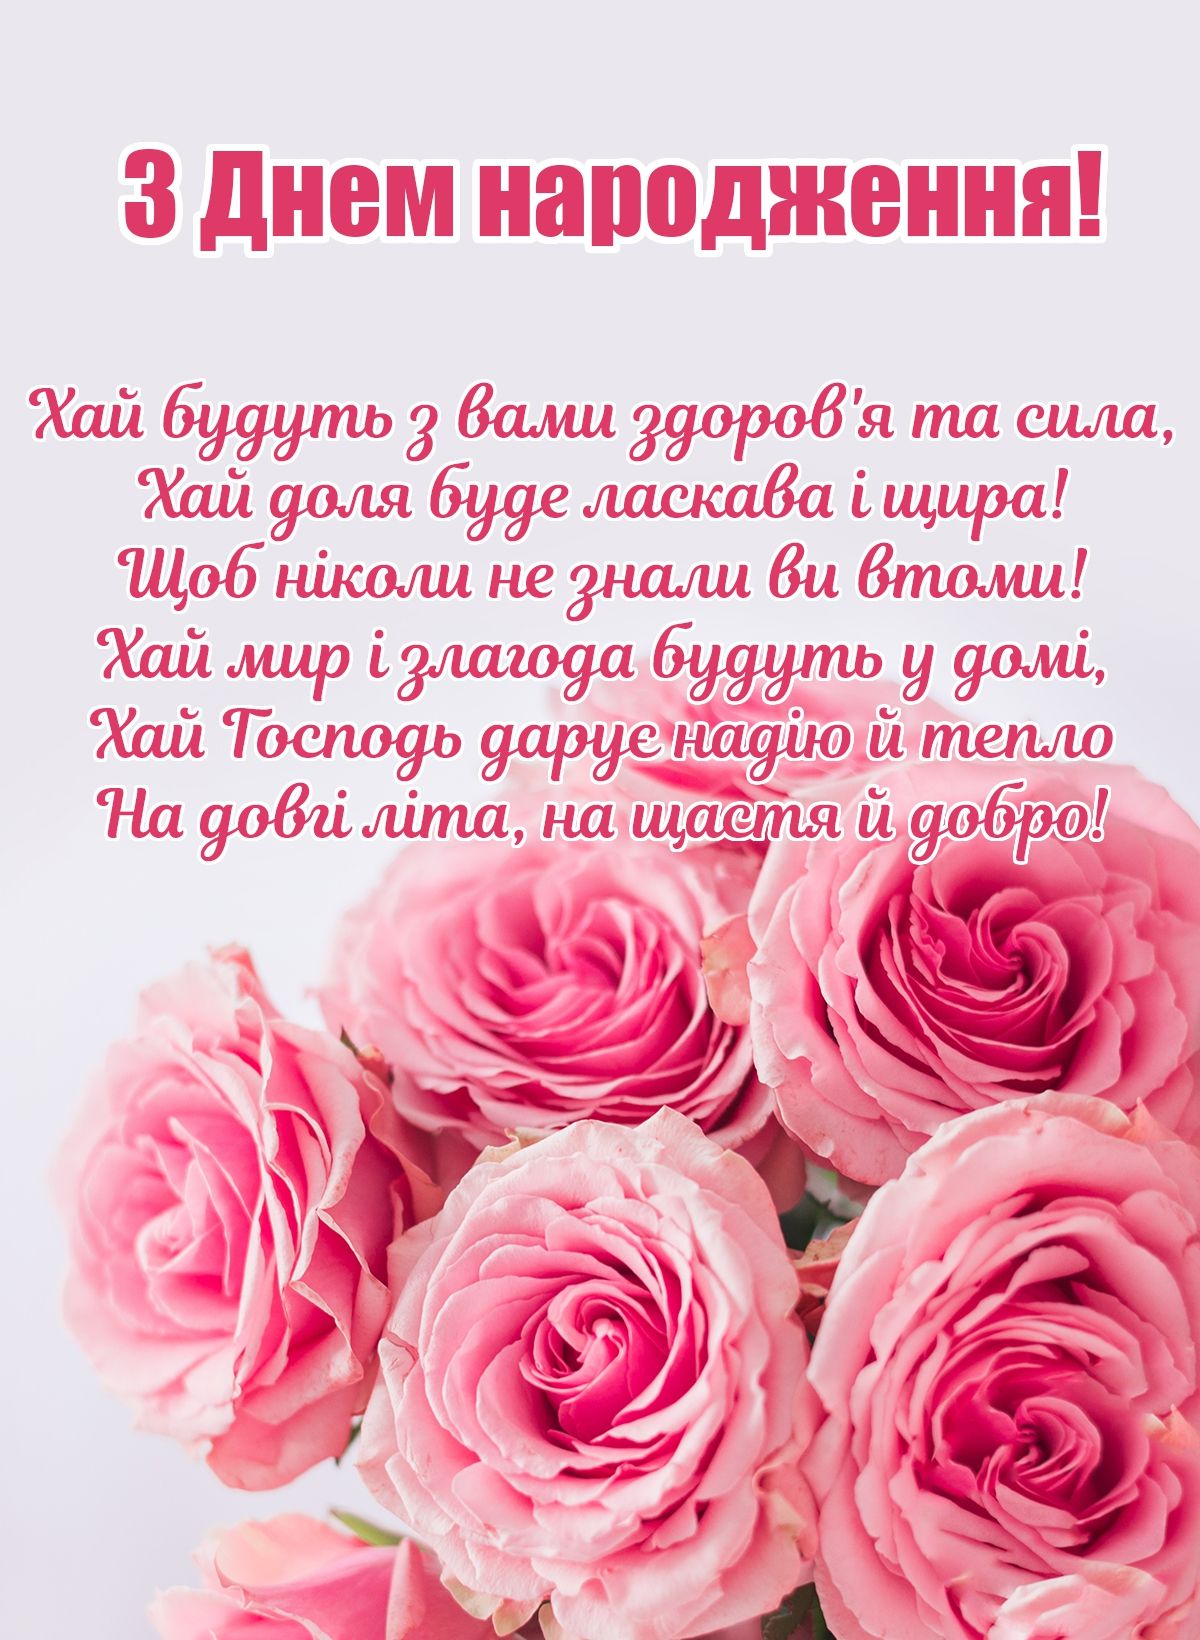 Привітання з народженням дитини, сина, дочки українською мовою
